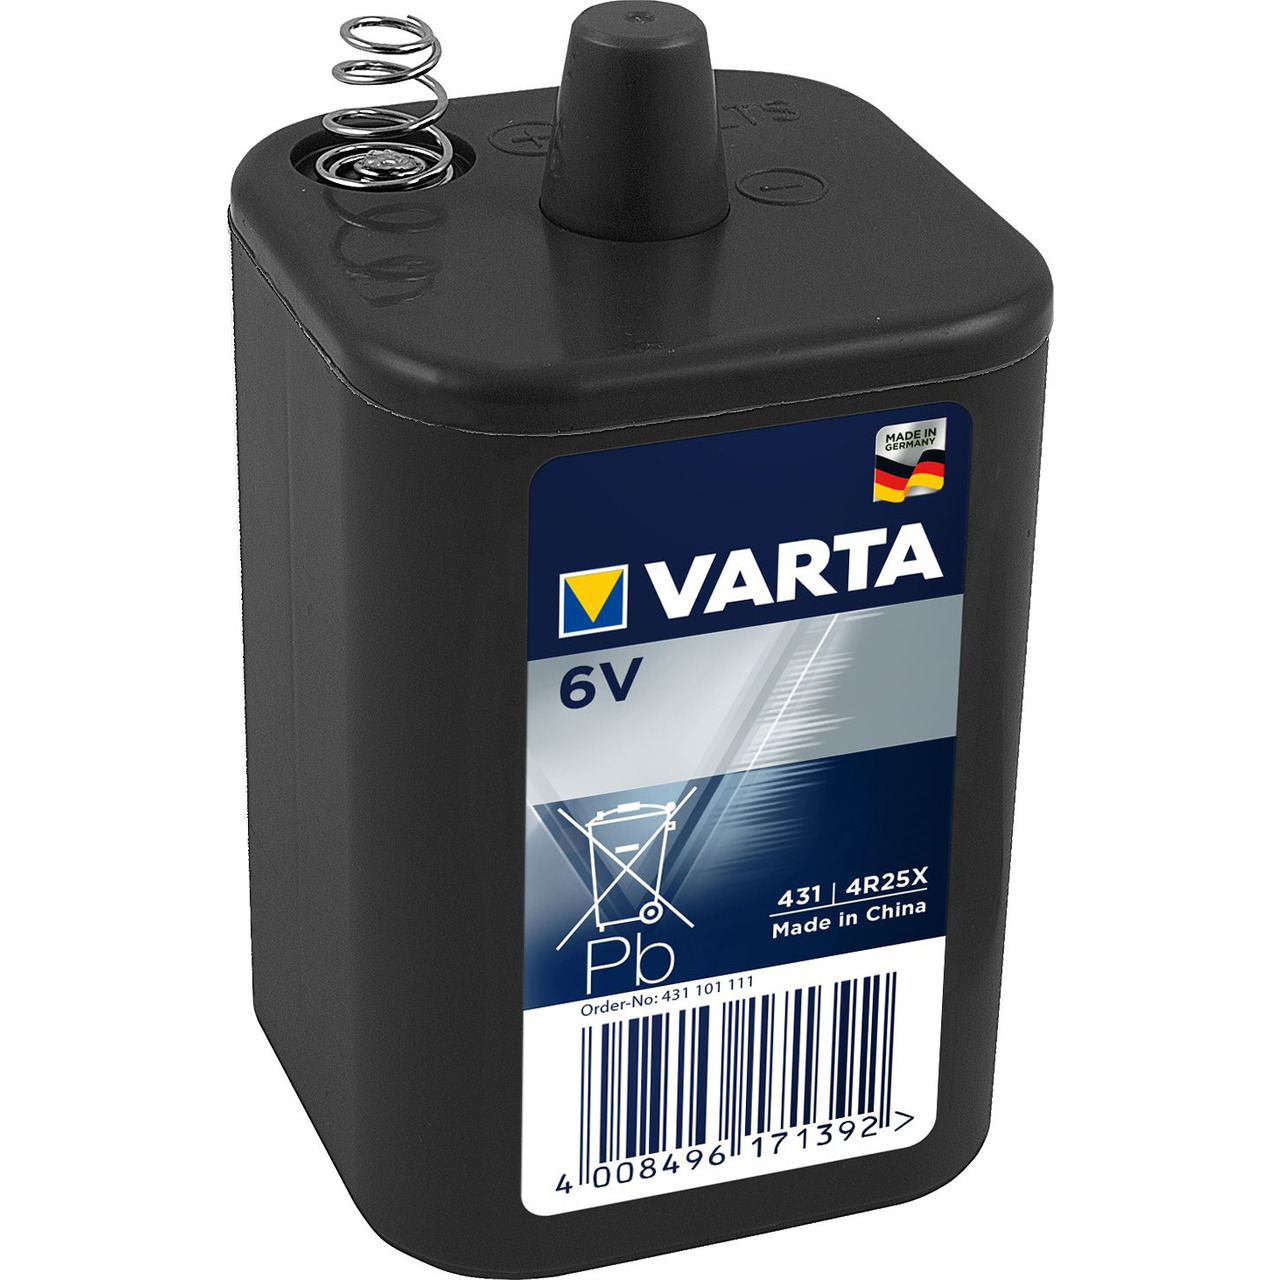 VARTA Professional Blockbatterie 431-4R25X- 6 V unter Stromversorgung